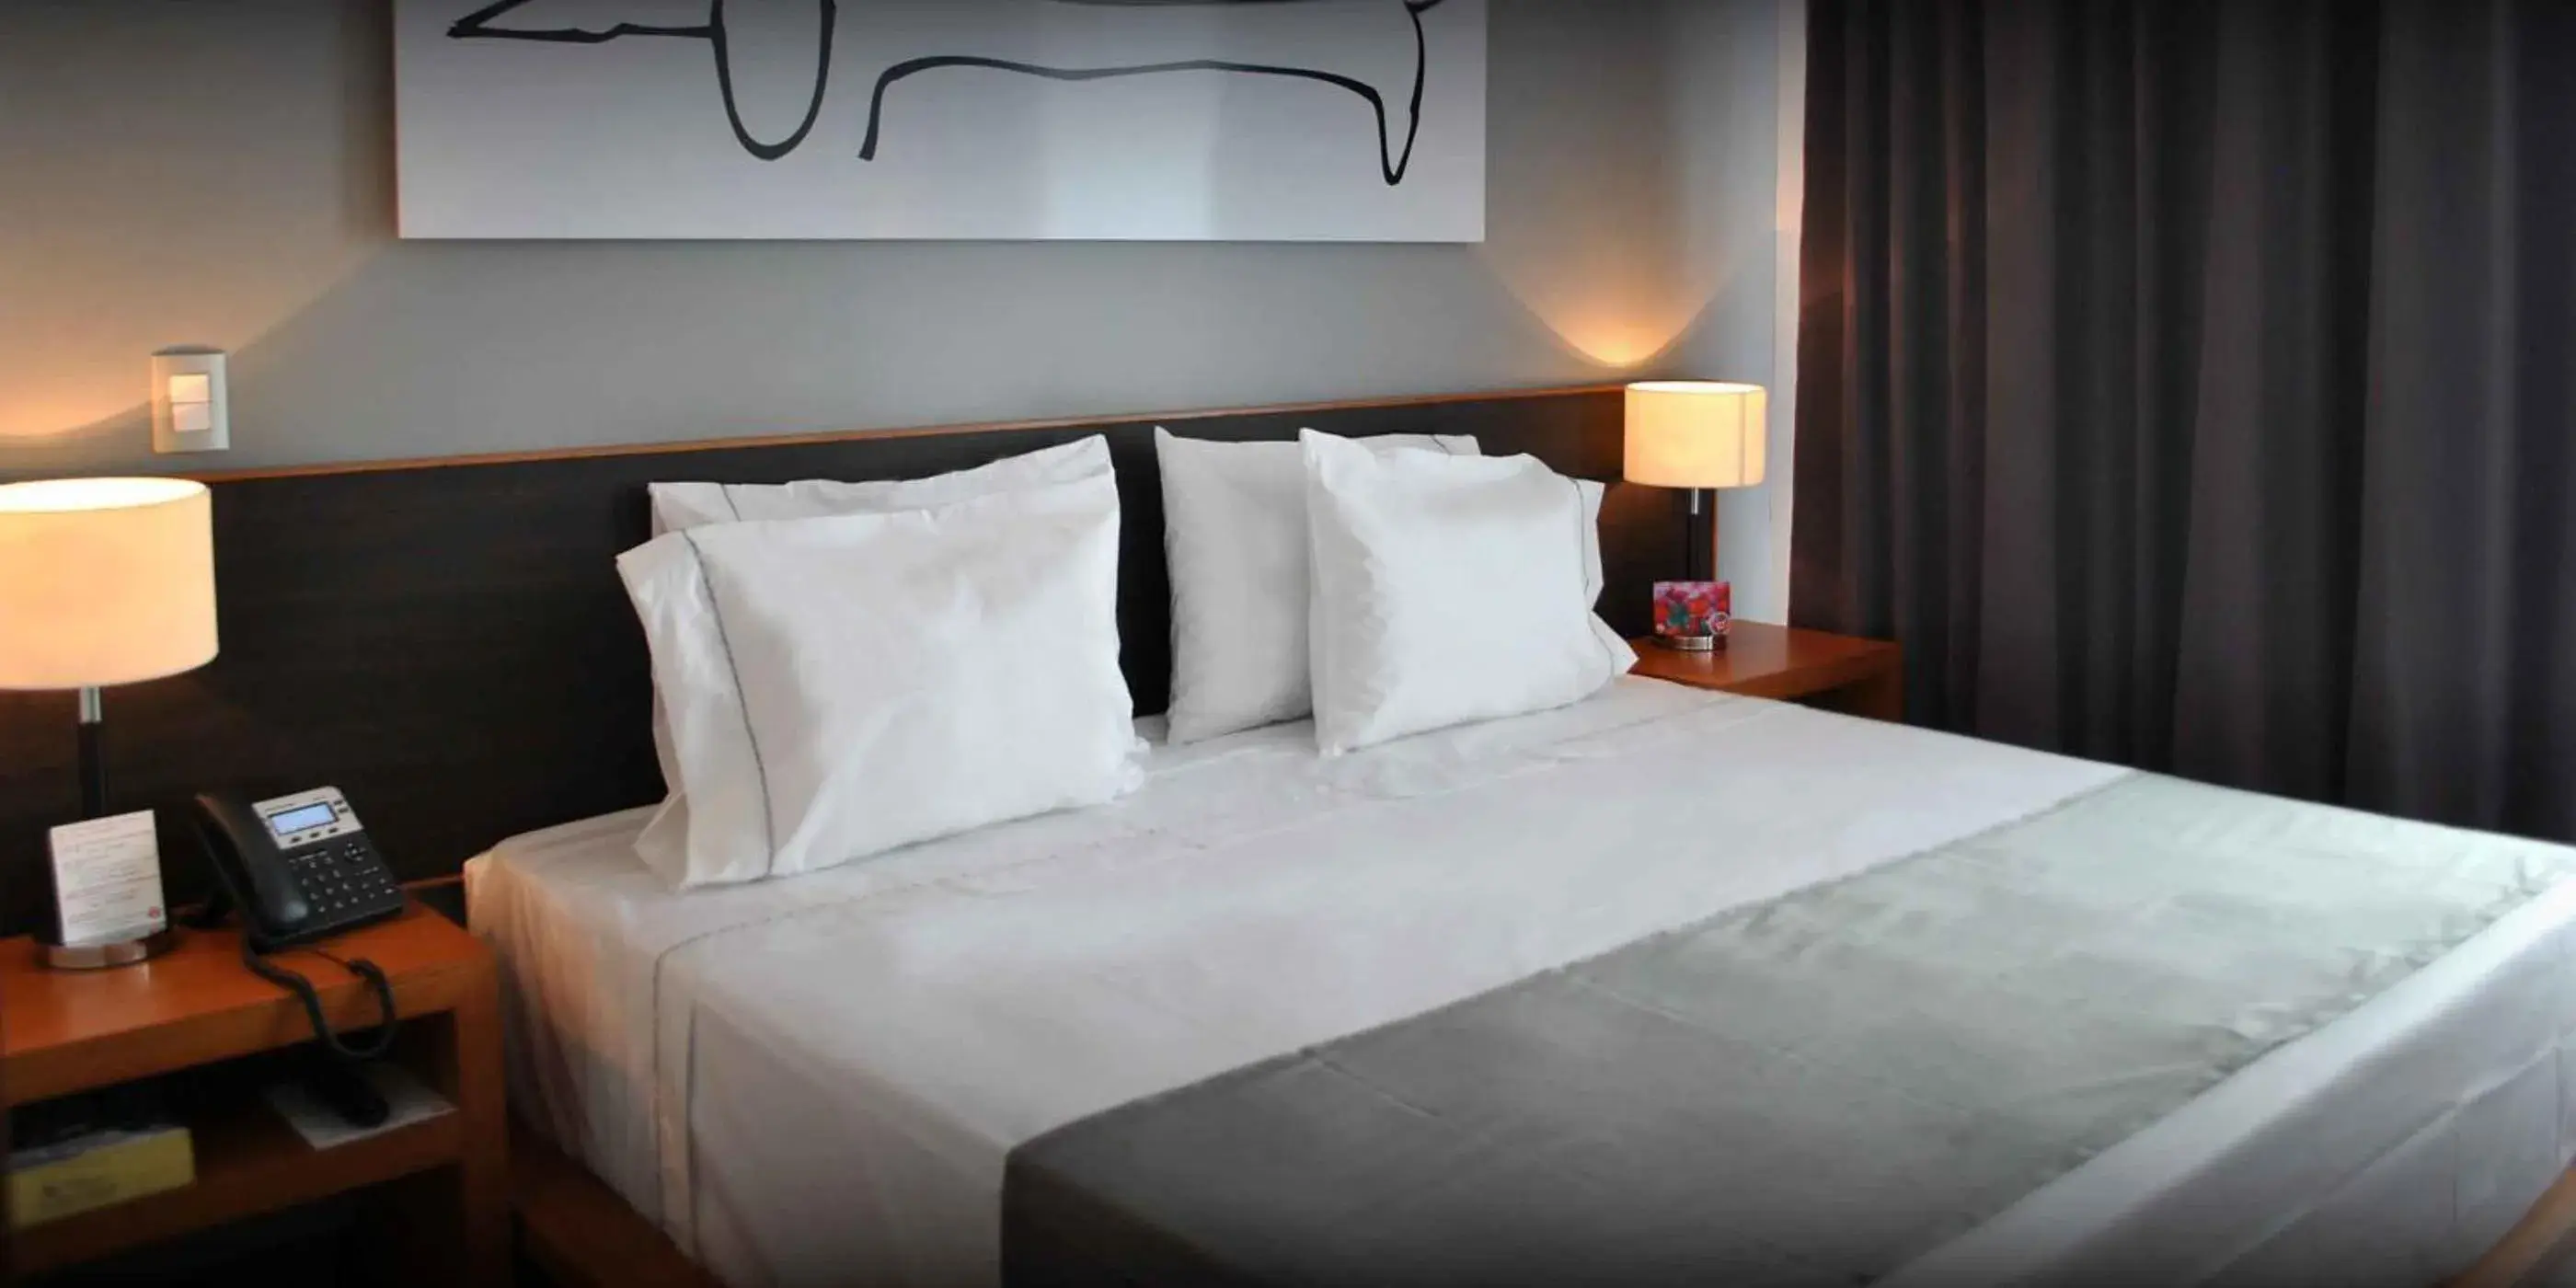 Bed in Hotel y Tú Expo